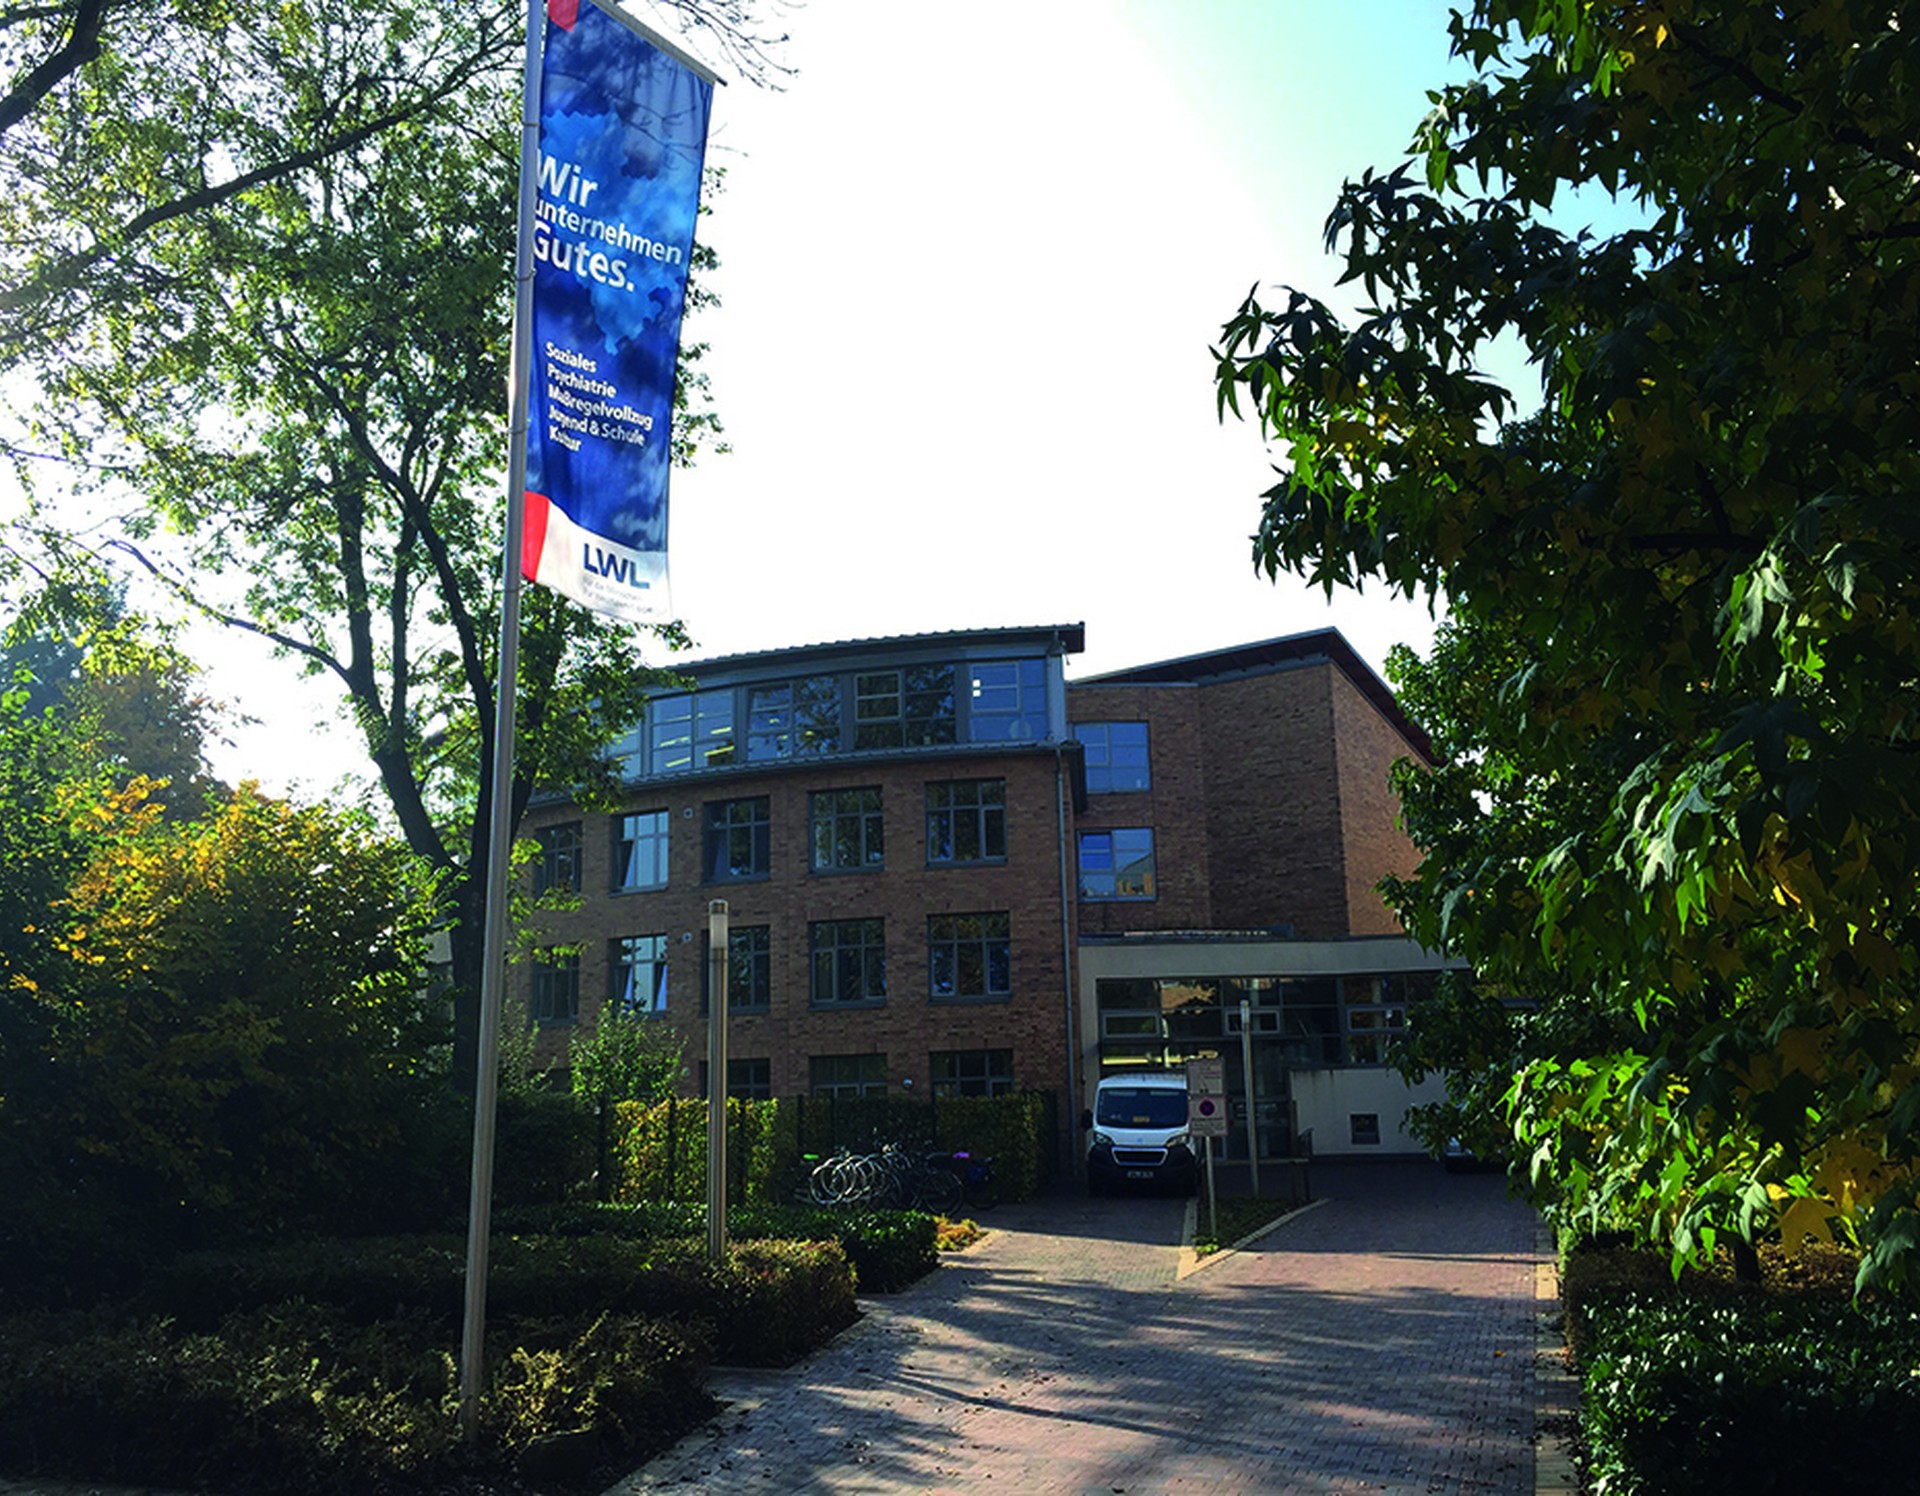 Ein vierstöckiges Gebäude mit großen Fenstern, davor weht eine blaue LWL-Flagge.Ein weißer Transporter steht vor dem Haus. Foto: Dr. Jörg WIttenhaus